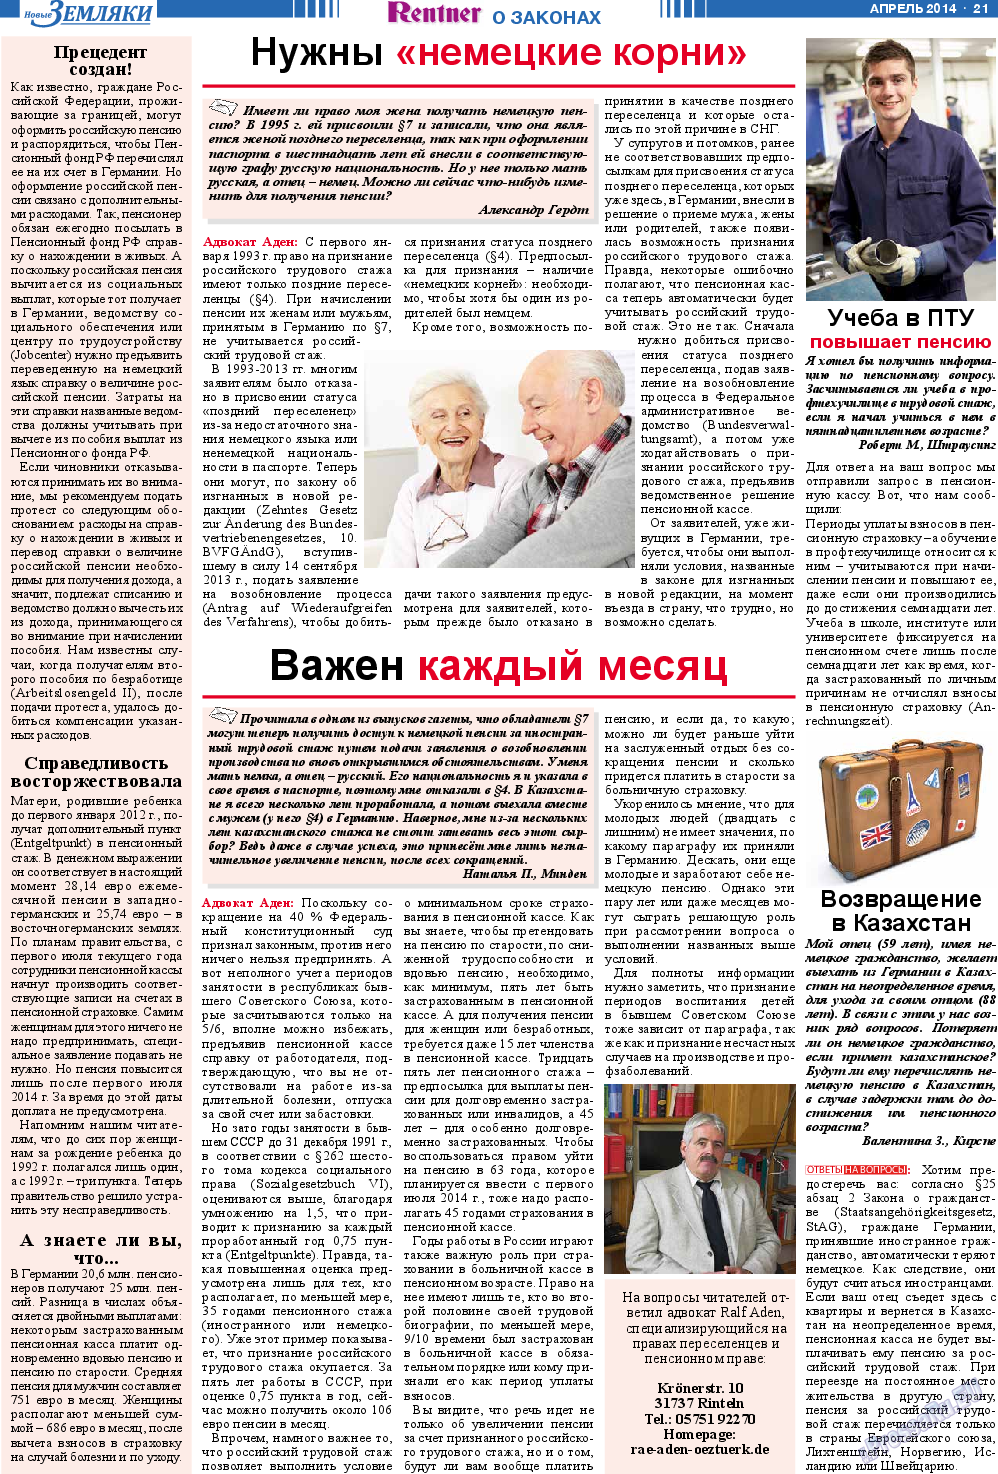 Новые Земляки, газета. 2014 №4 стр.21